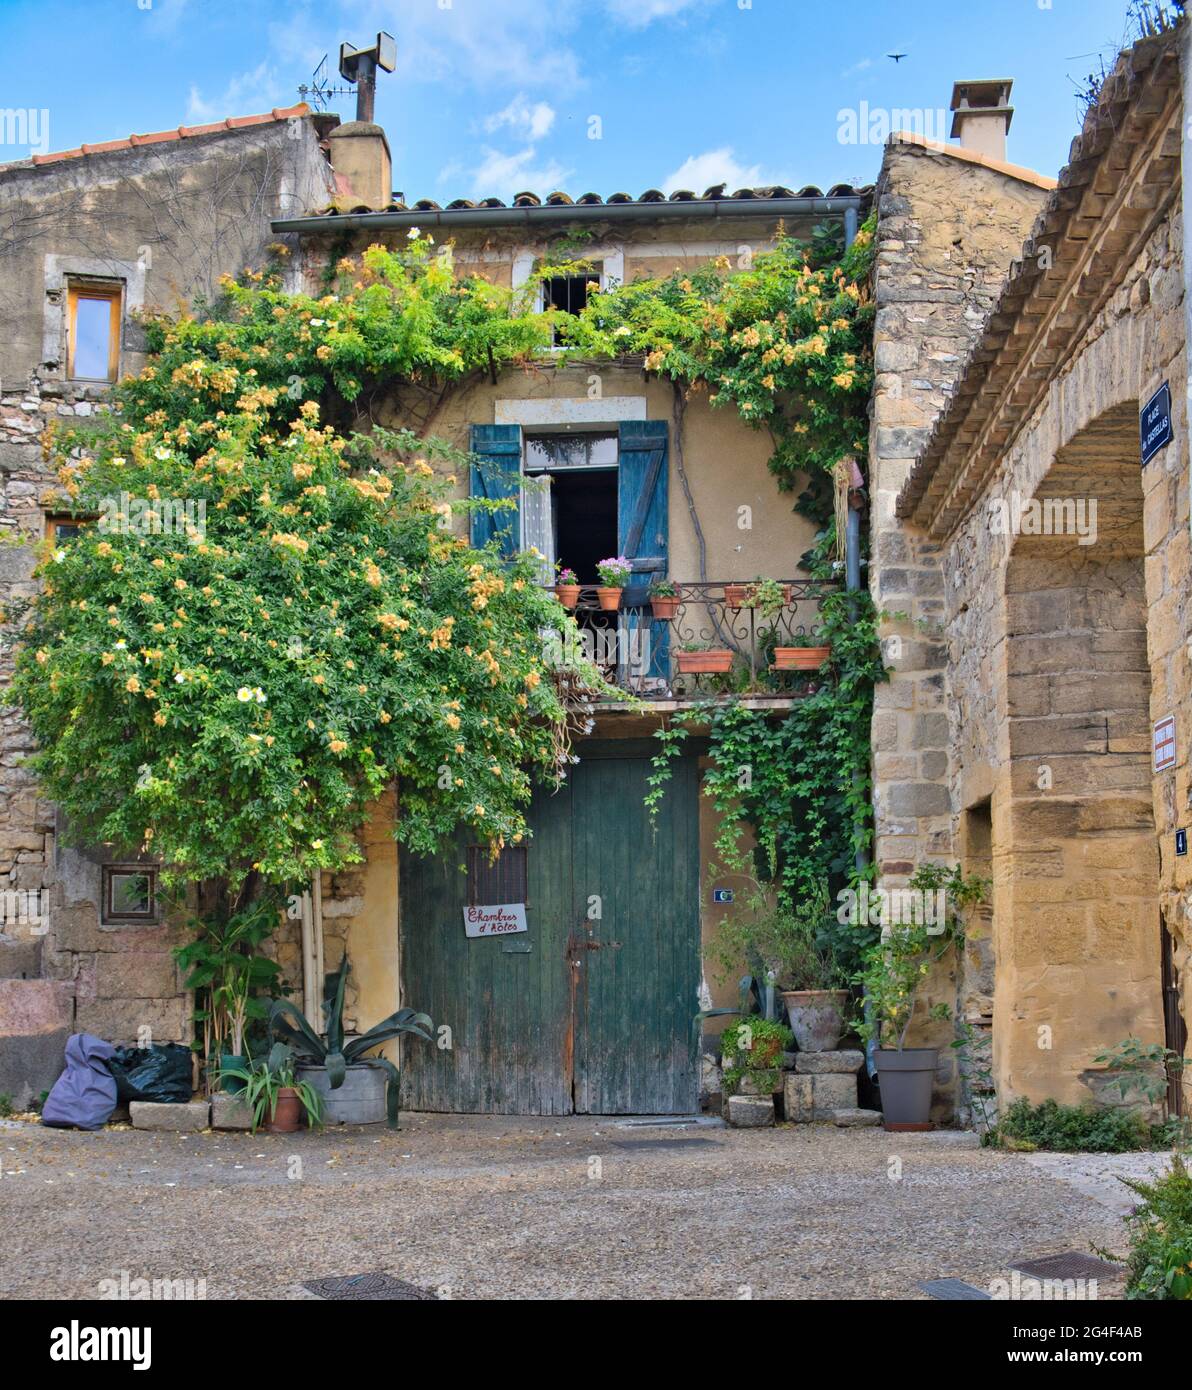 Collias, Provence, France 06.21.21 edificio rustico in pietra con porte doppie in legno verde. Finestra e balcone con persiane blu. Piante pareti di arrampicata Foto Stock